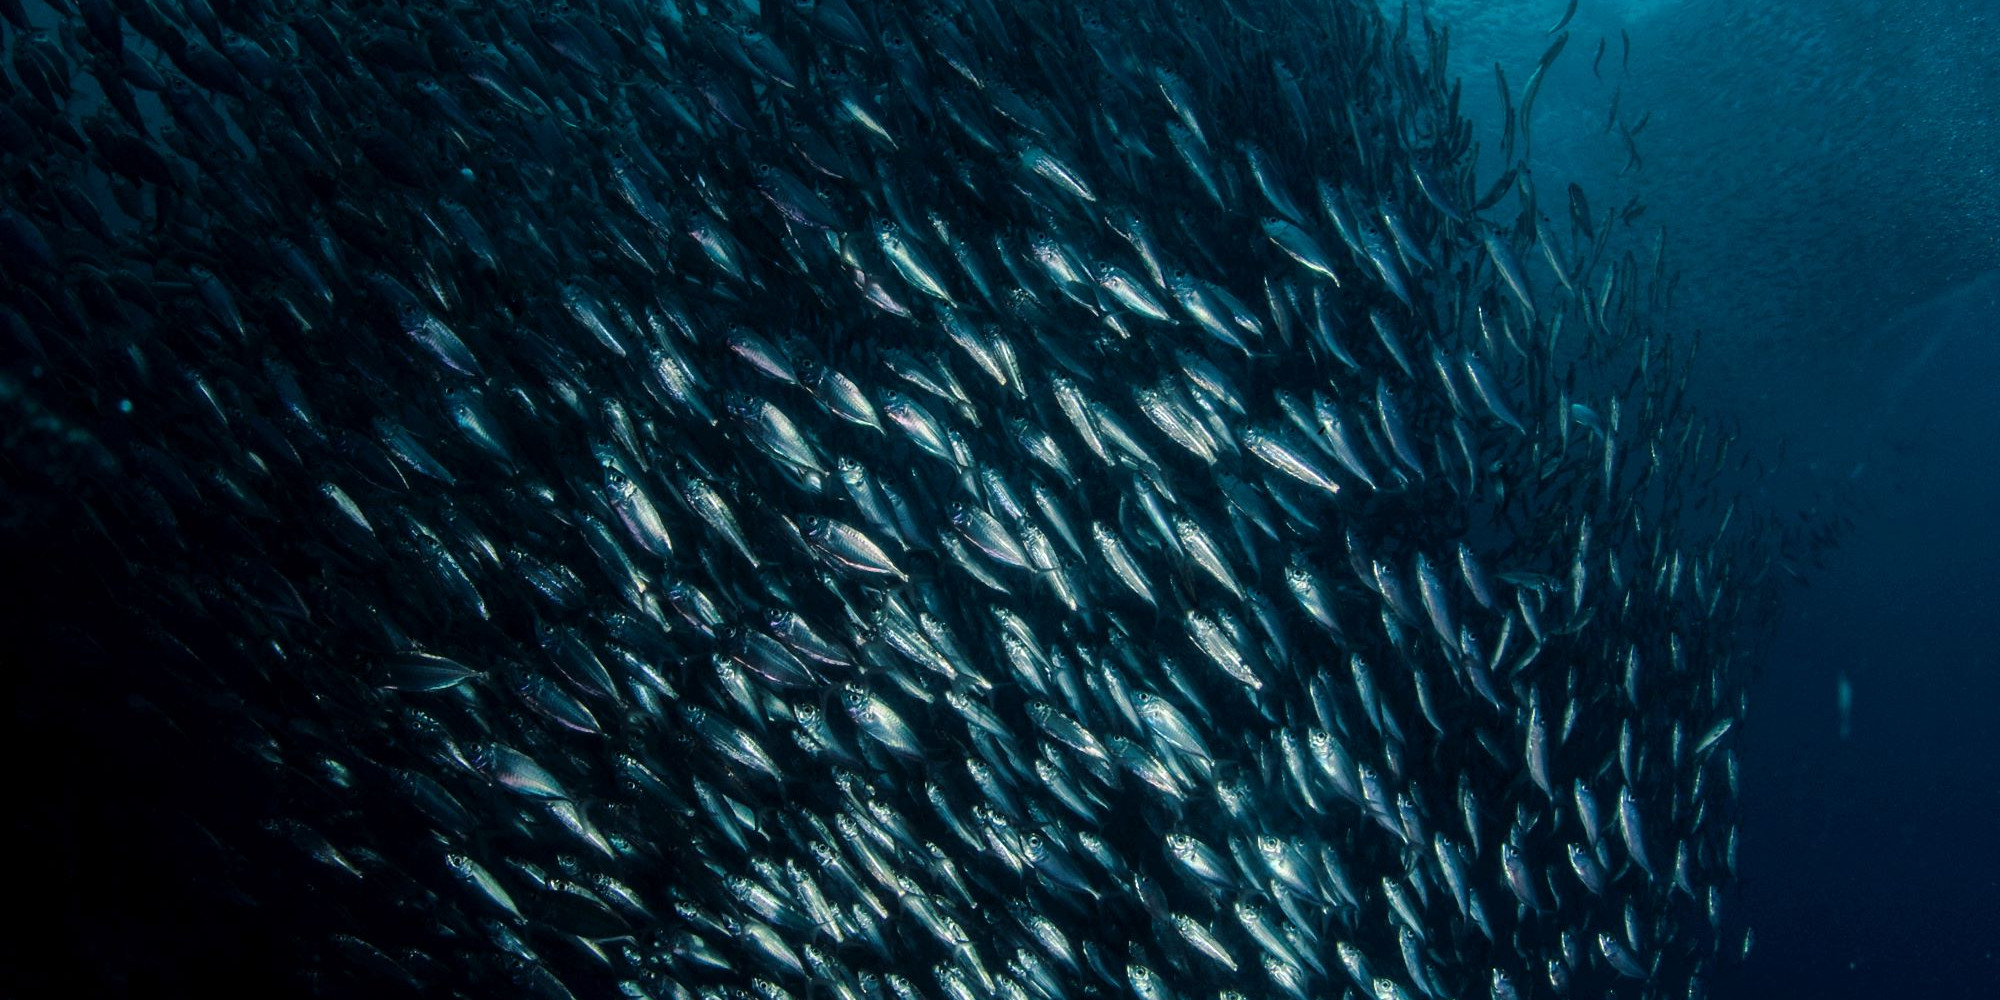 Undervassfoto. Ein stor stim sardiner du ser undafrå.